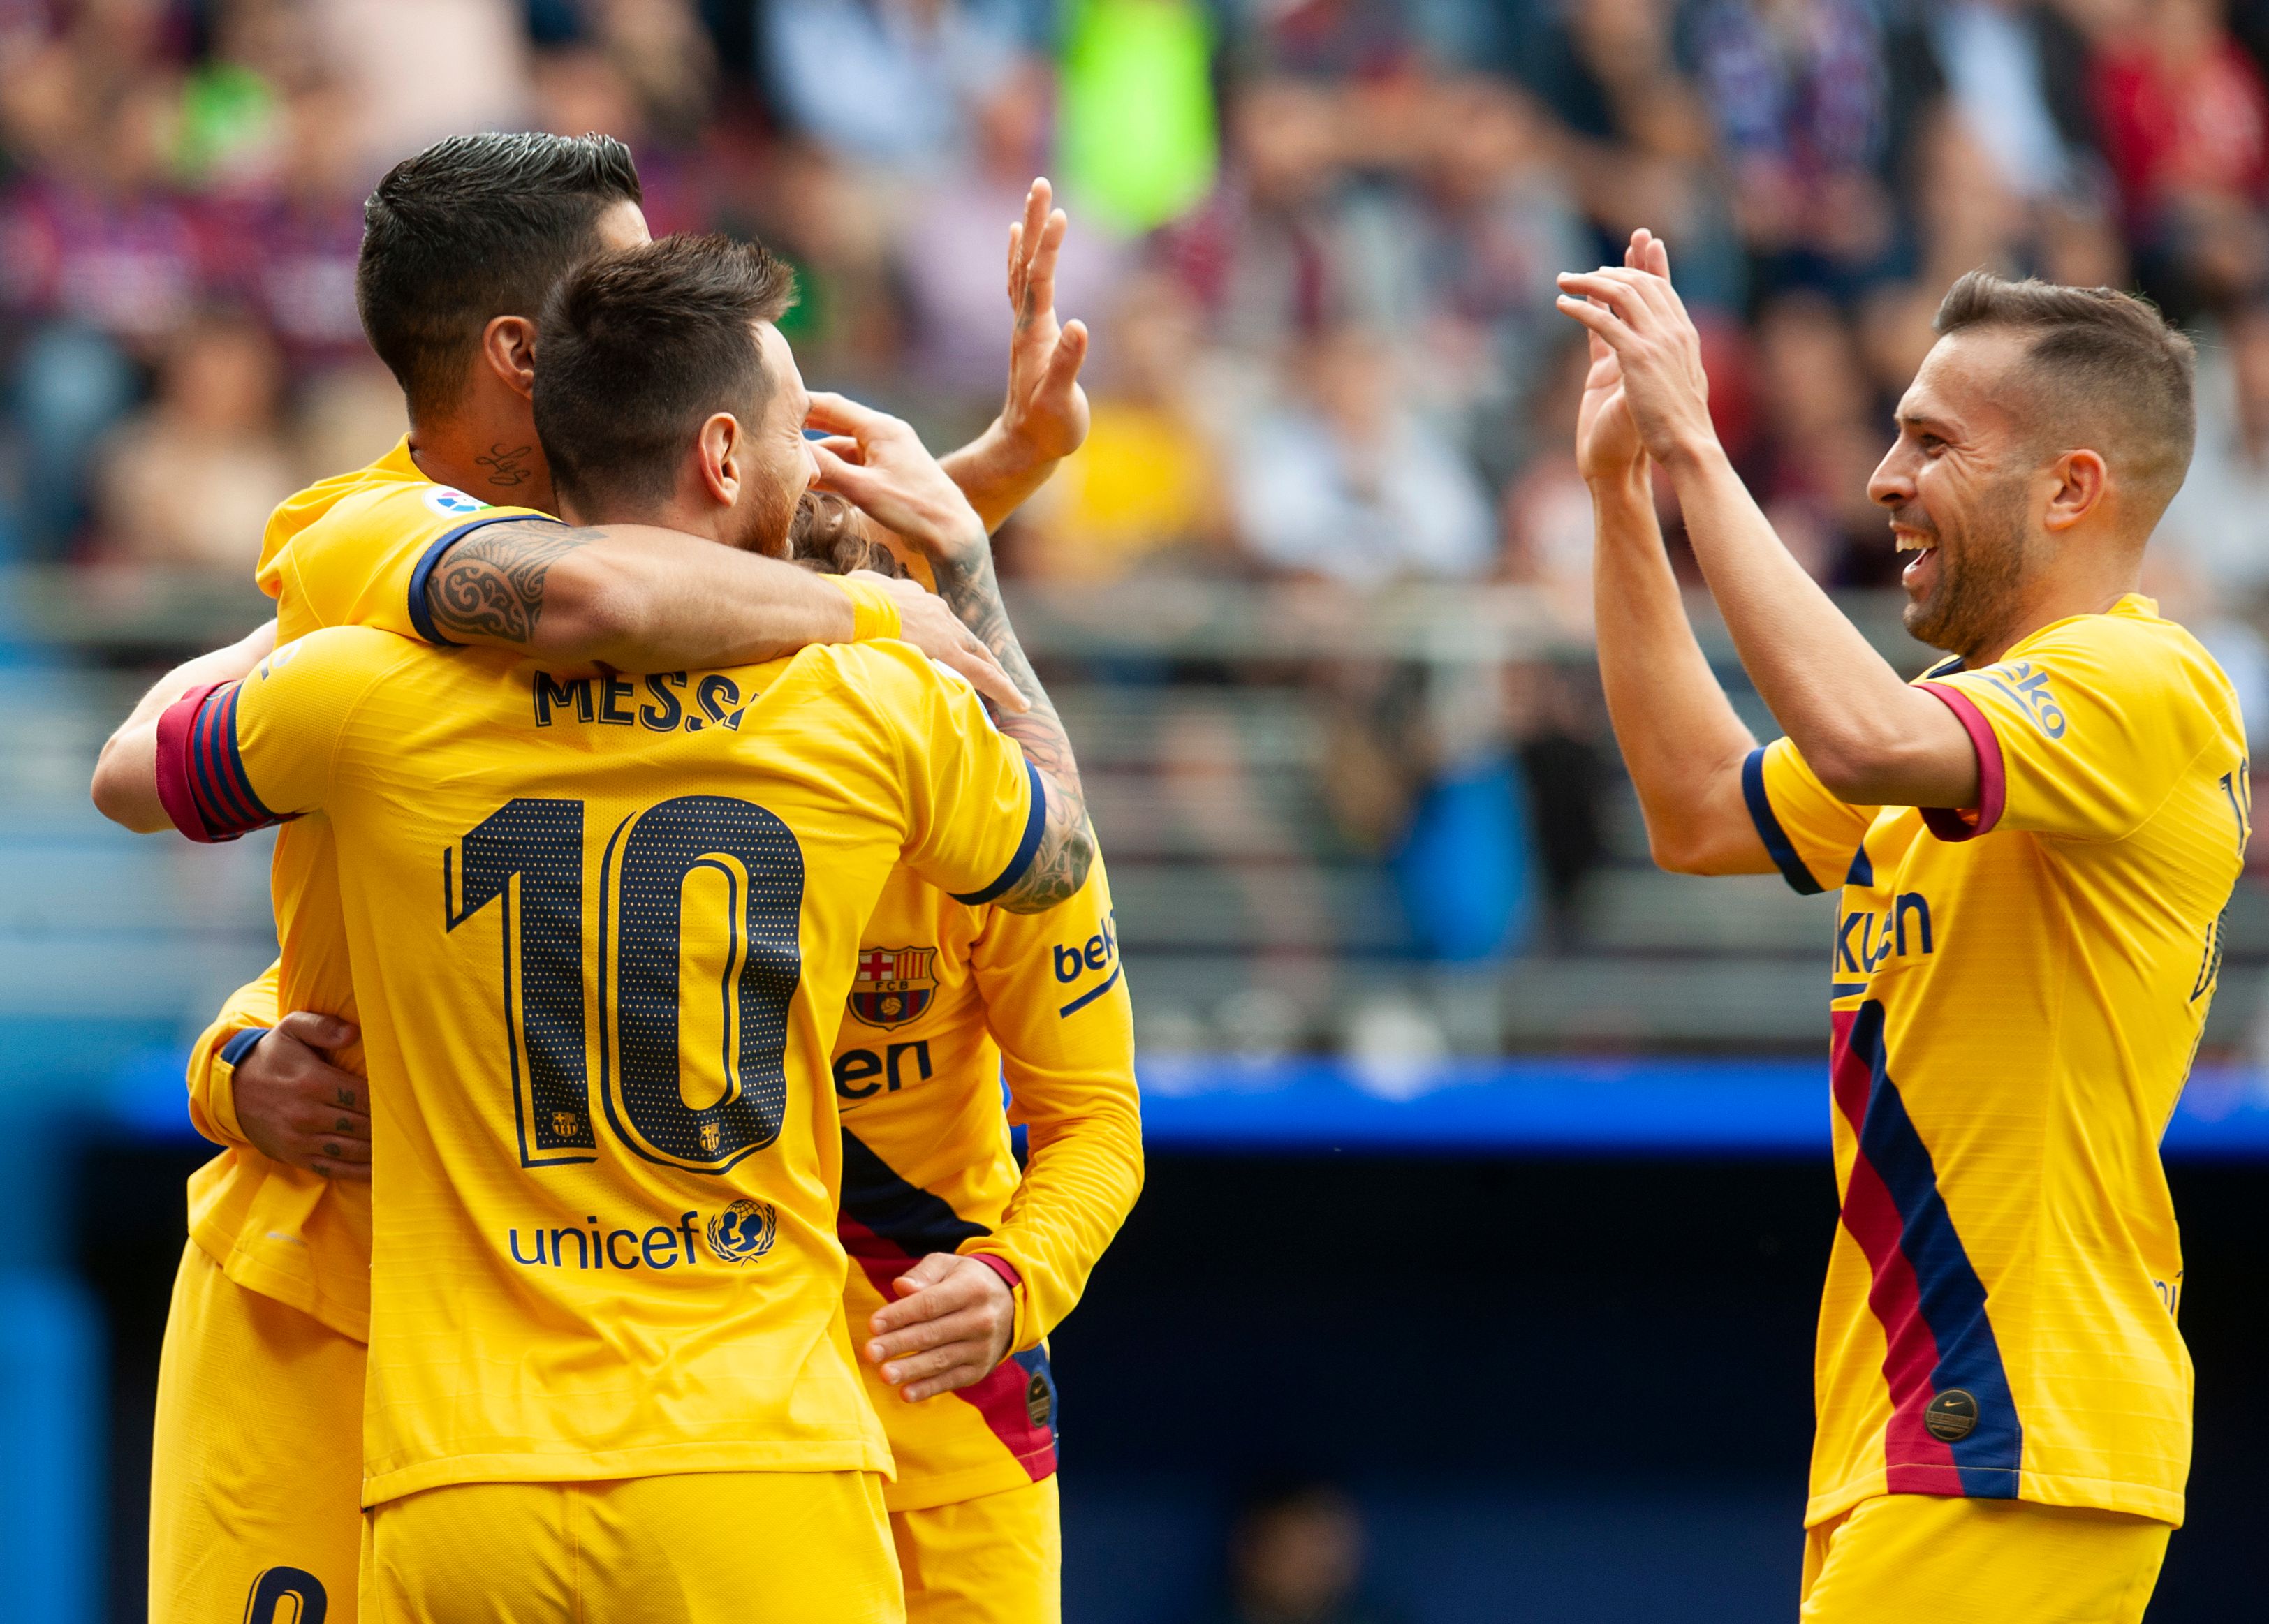 Los jugadores del Barcelona festejan la anotación de Messi en el partido contra el Eibar. (Foto Prensa Libre: AFP).